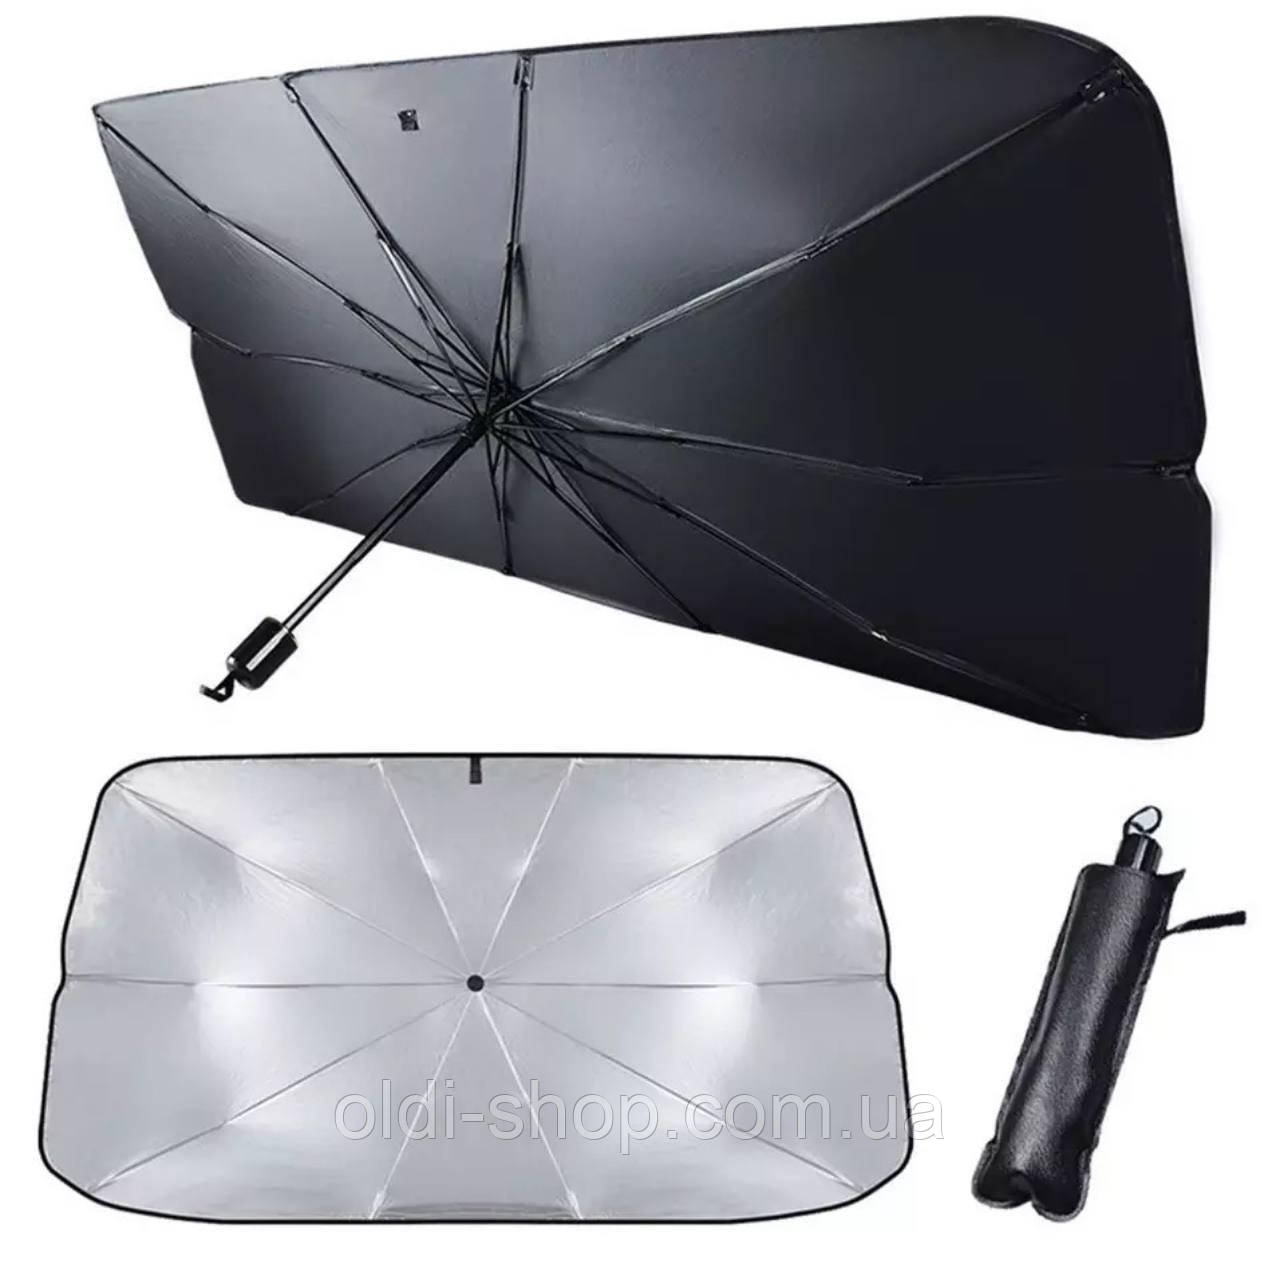 Автомобільна сонцезахисна парасолька-шторка для лобового скла, 130*75 см, в чохлі